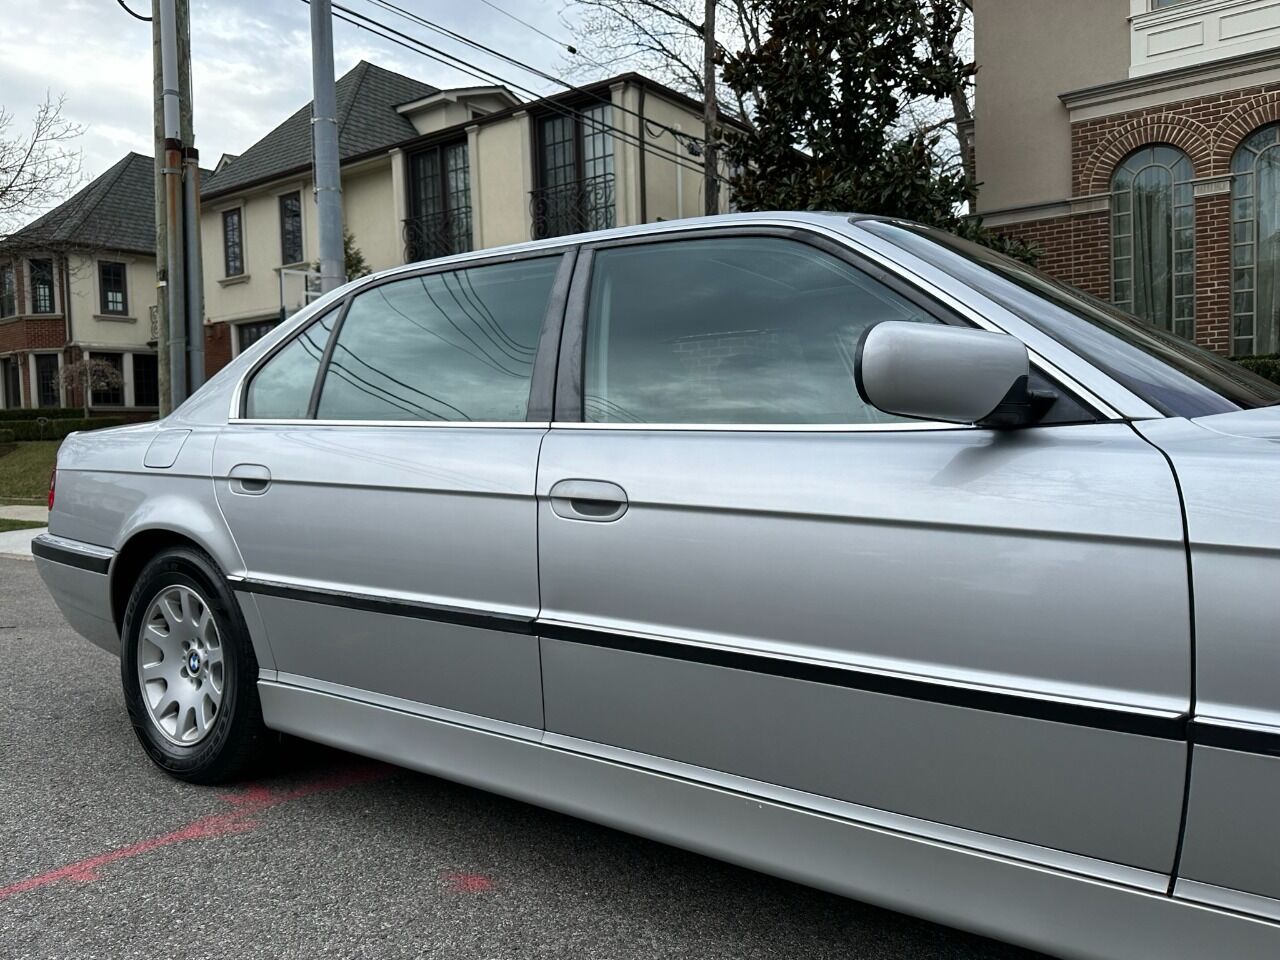 2001 BMW 740i Sedan - $8,900